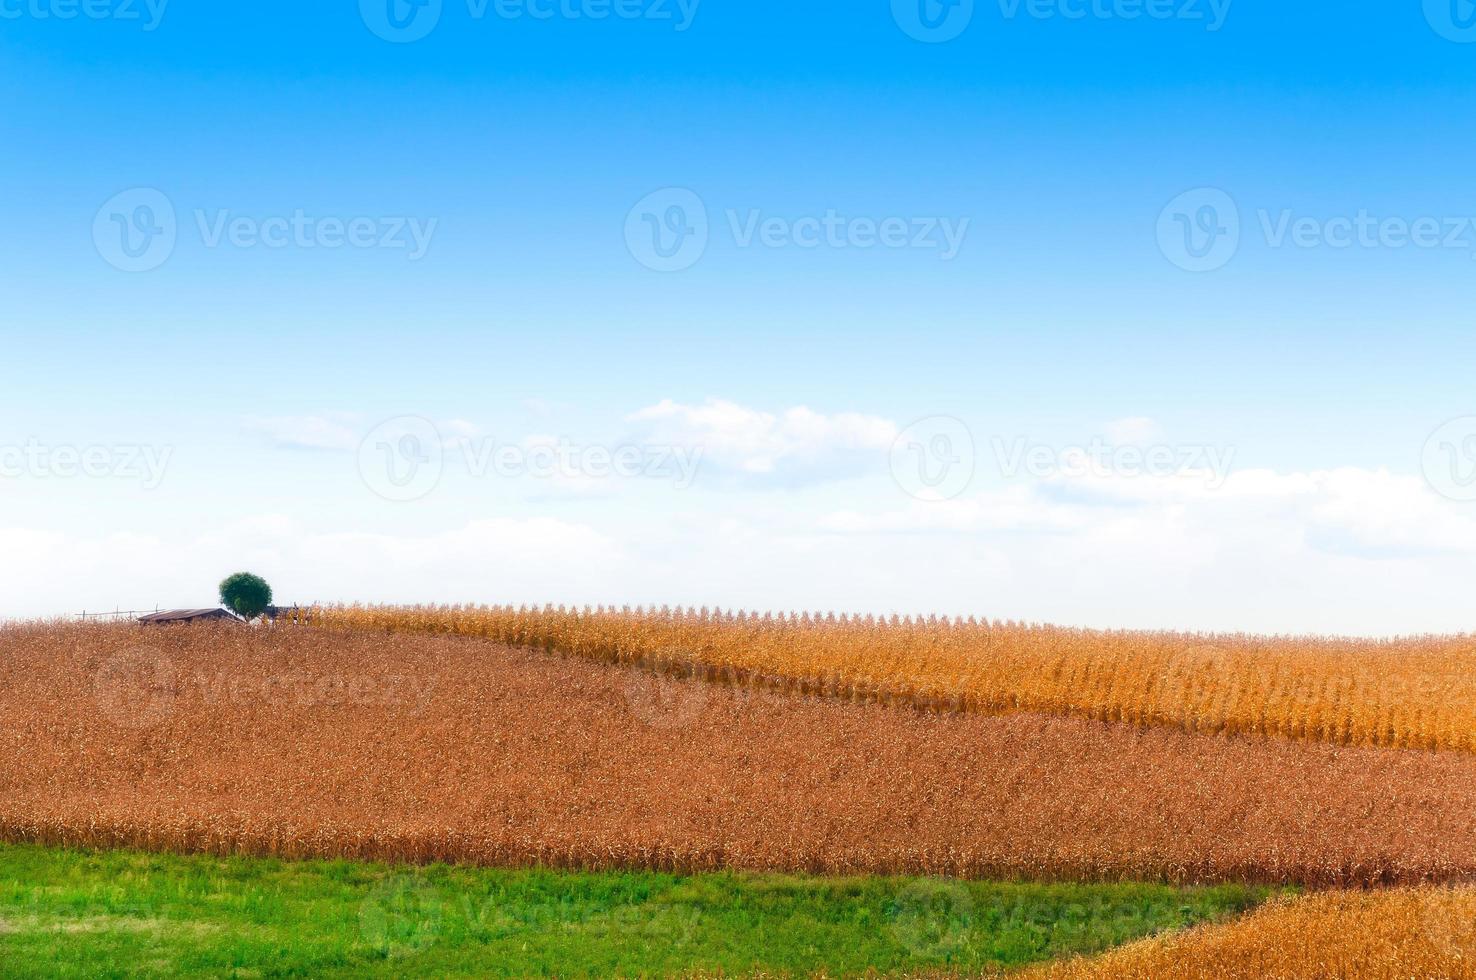 hermosa verano paisaje con dorado cosecha en verano con brillante azul cielo para fondo, seco maíz amarillo campo y verde césped con grande árbol foto